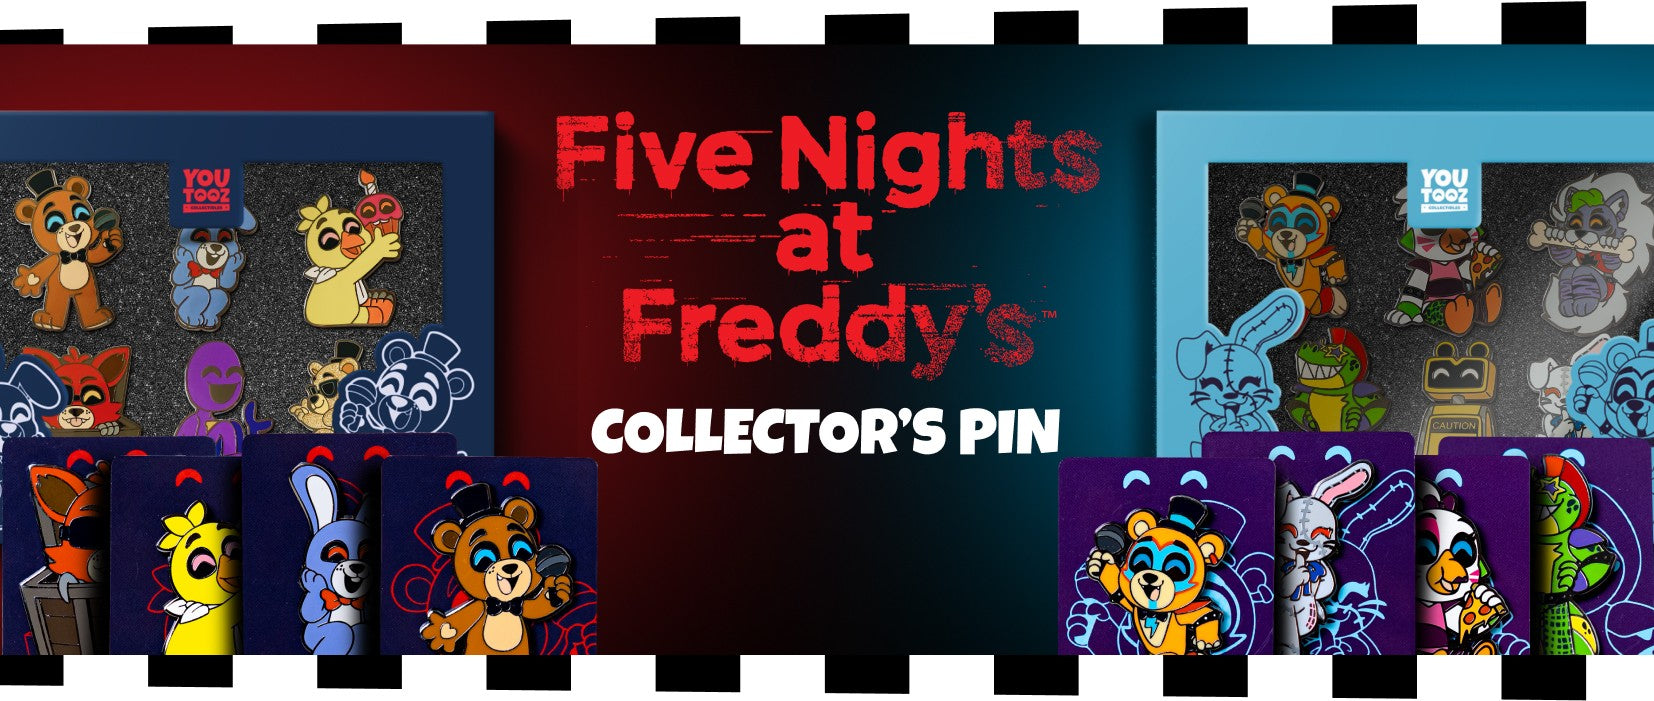 Made a Rockstar Freddy Youtooz Concept : r/fivenightsatfreddys